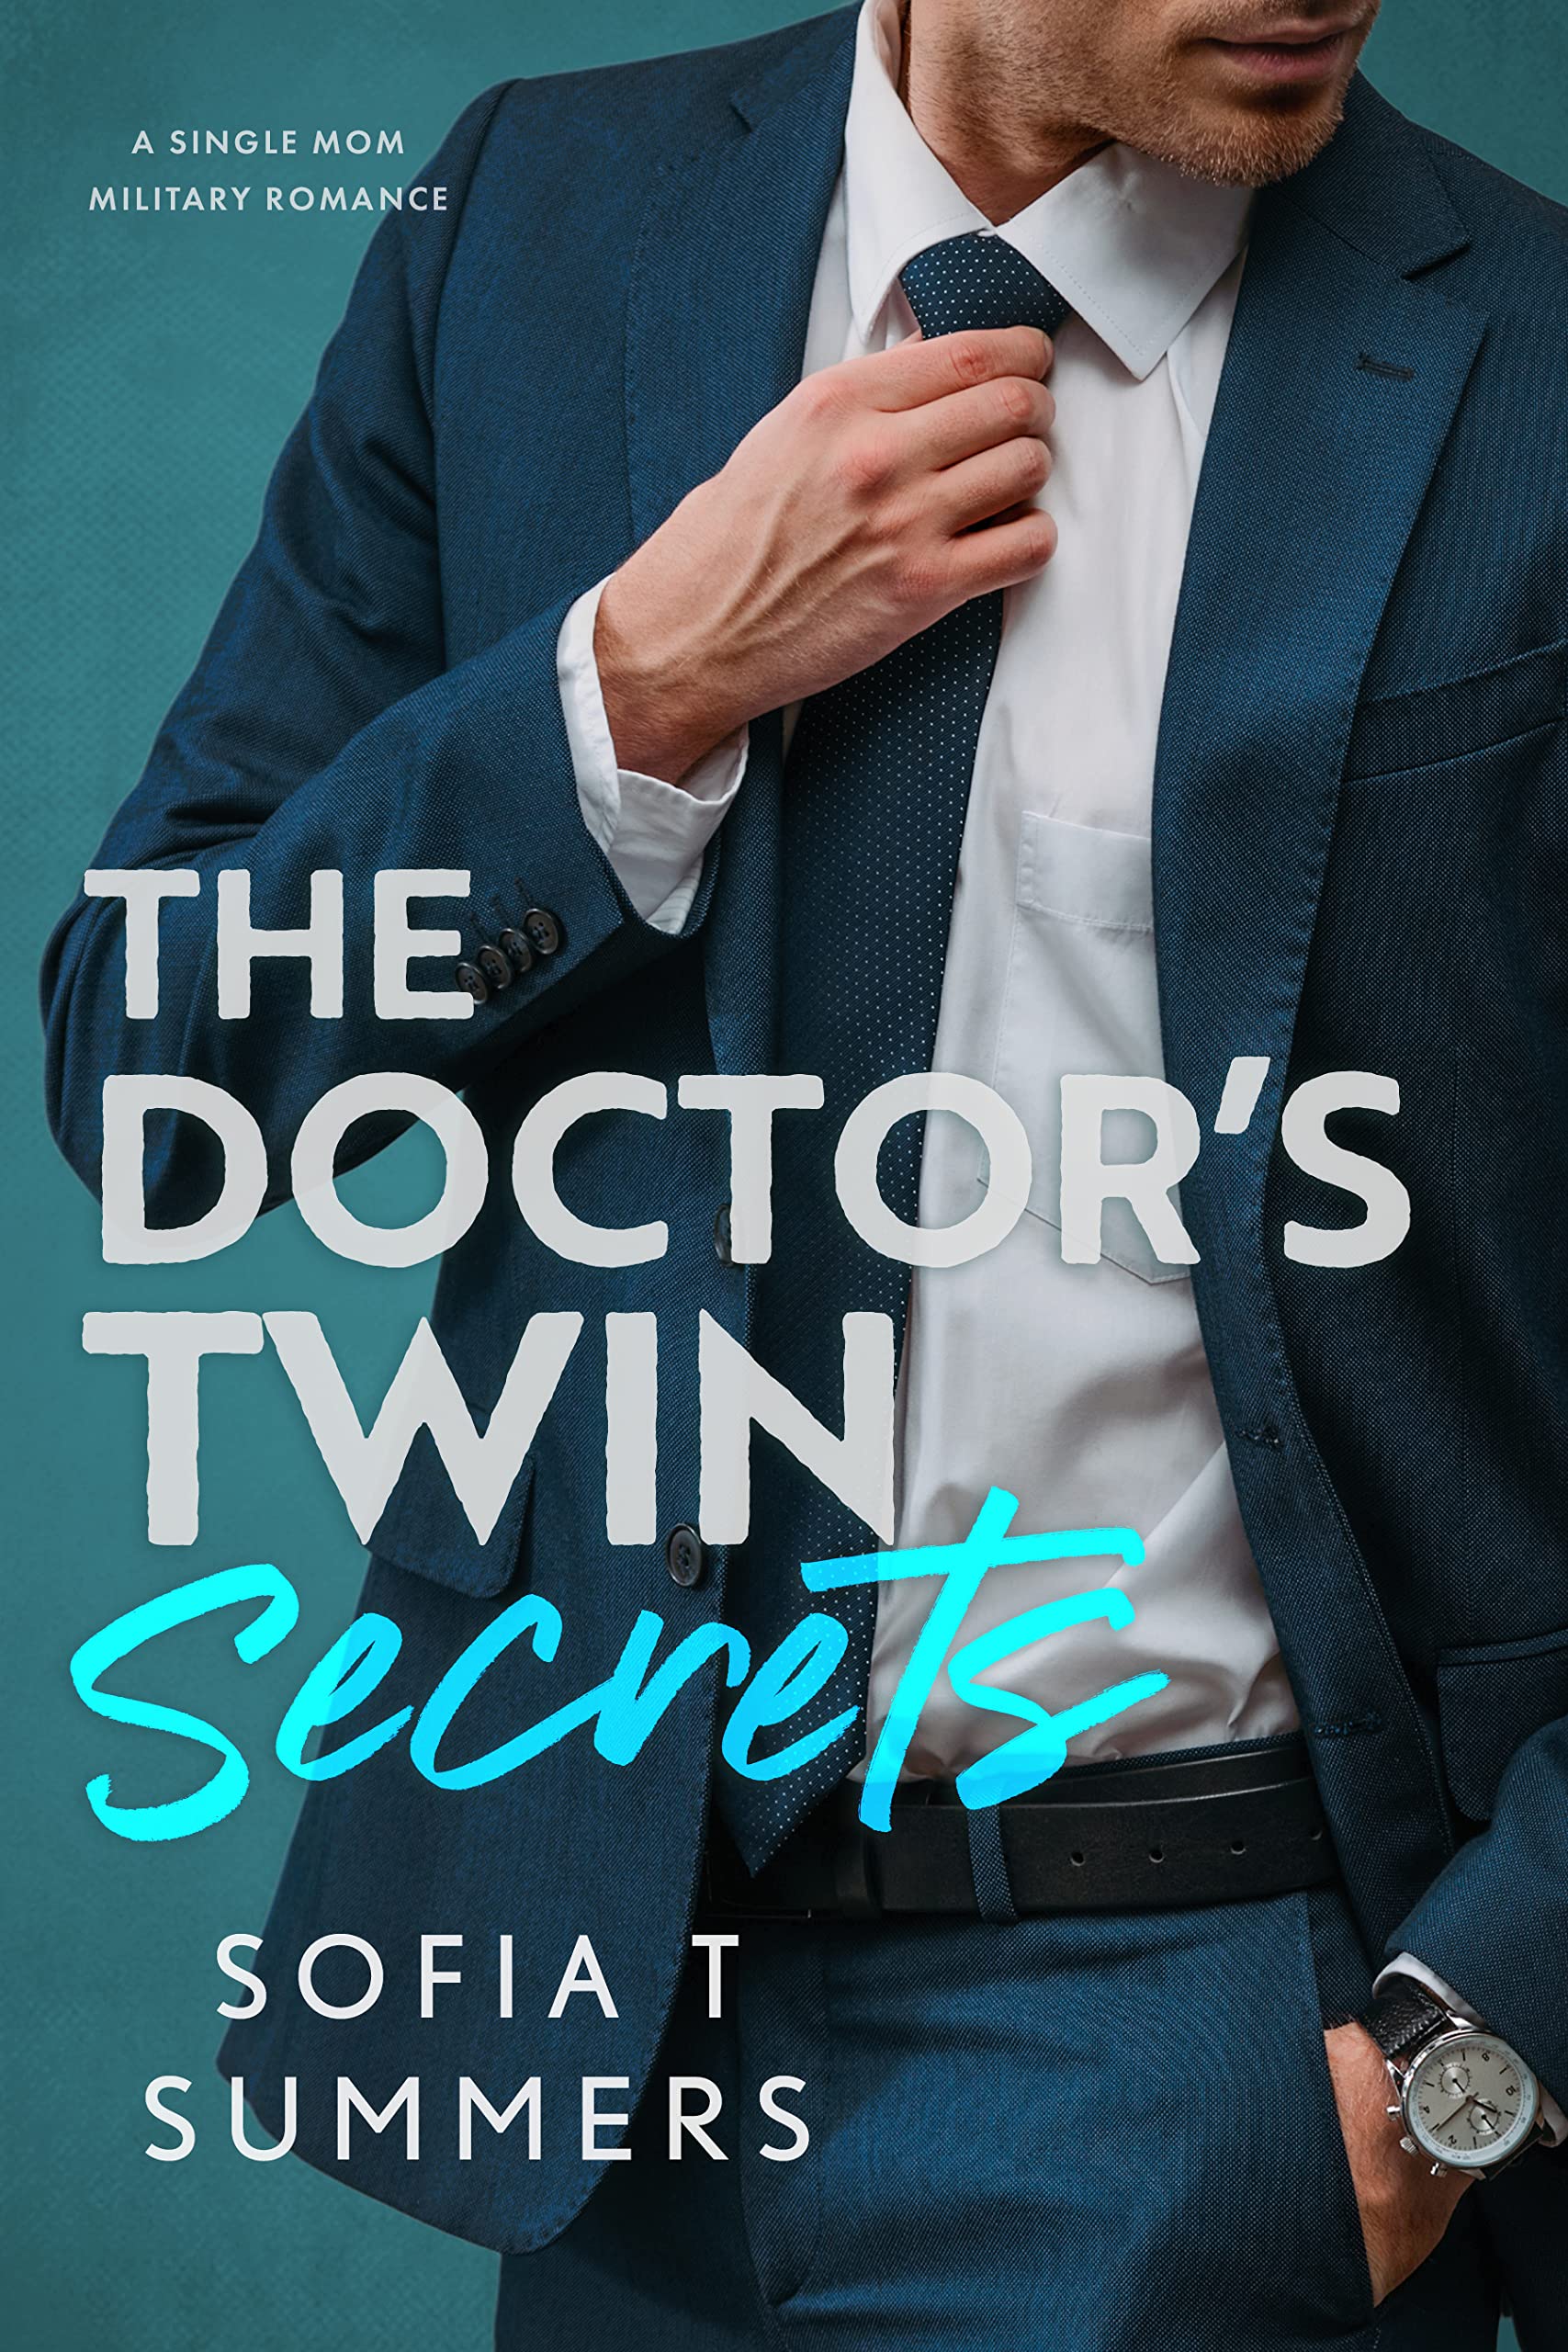 alex dennison recommends Secrets Of Sofia